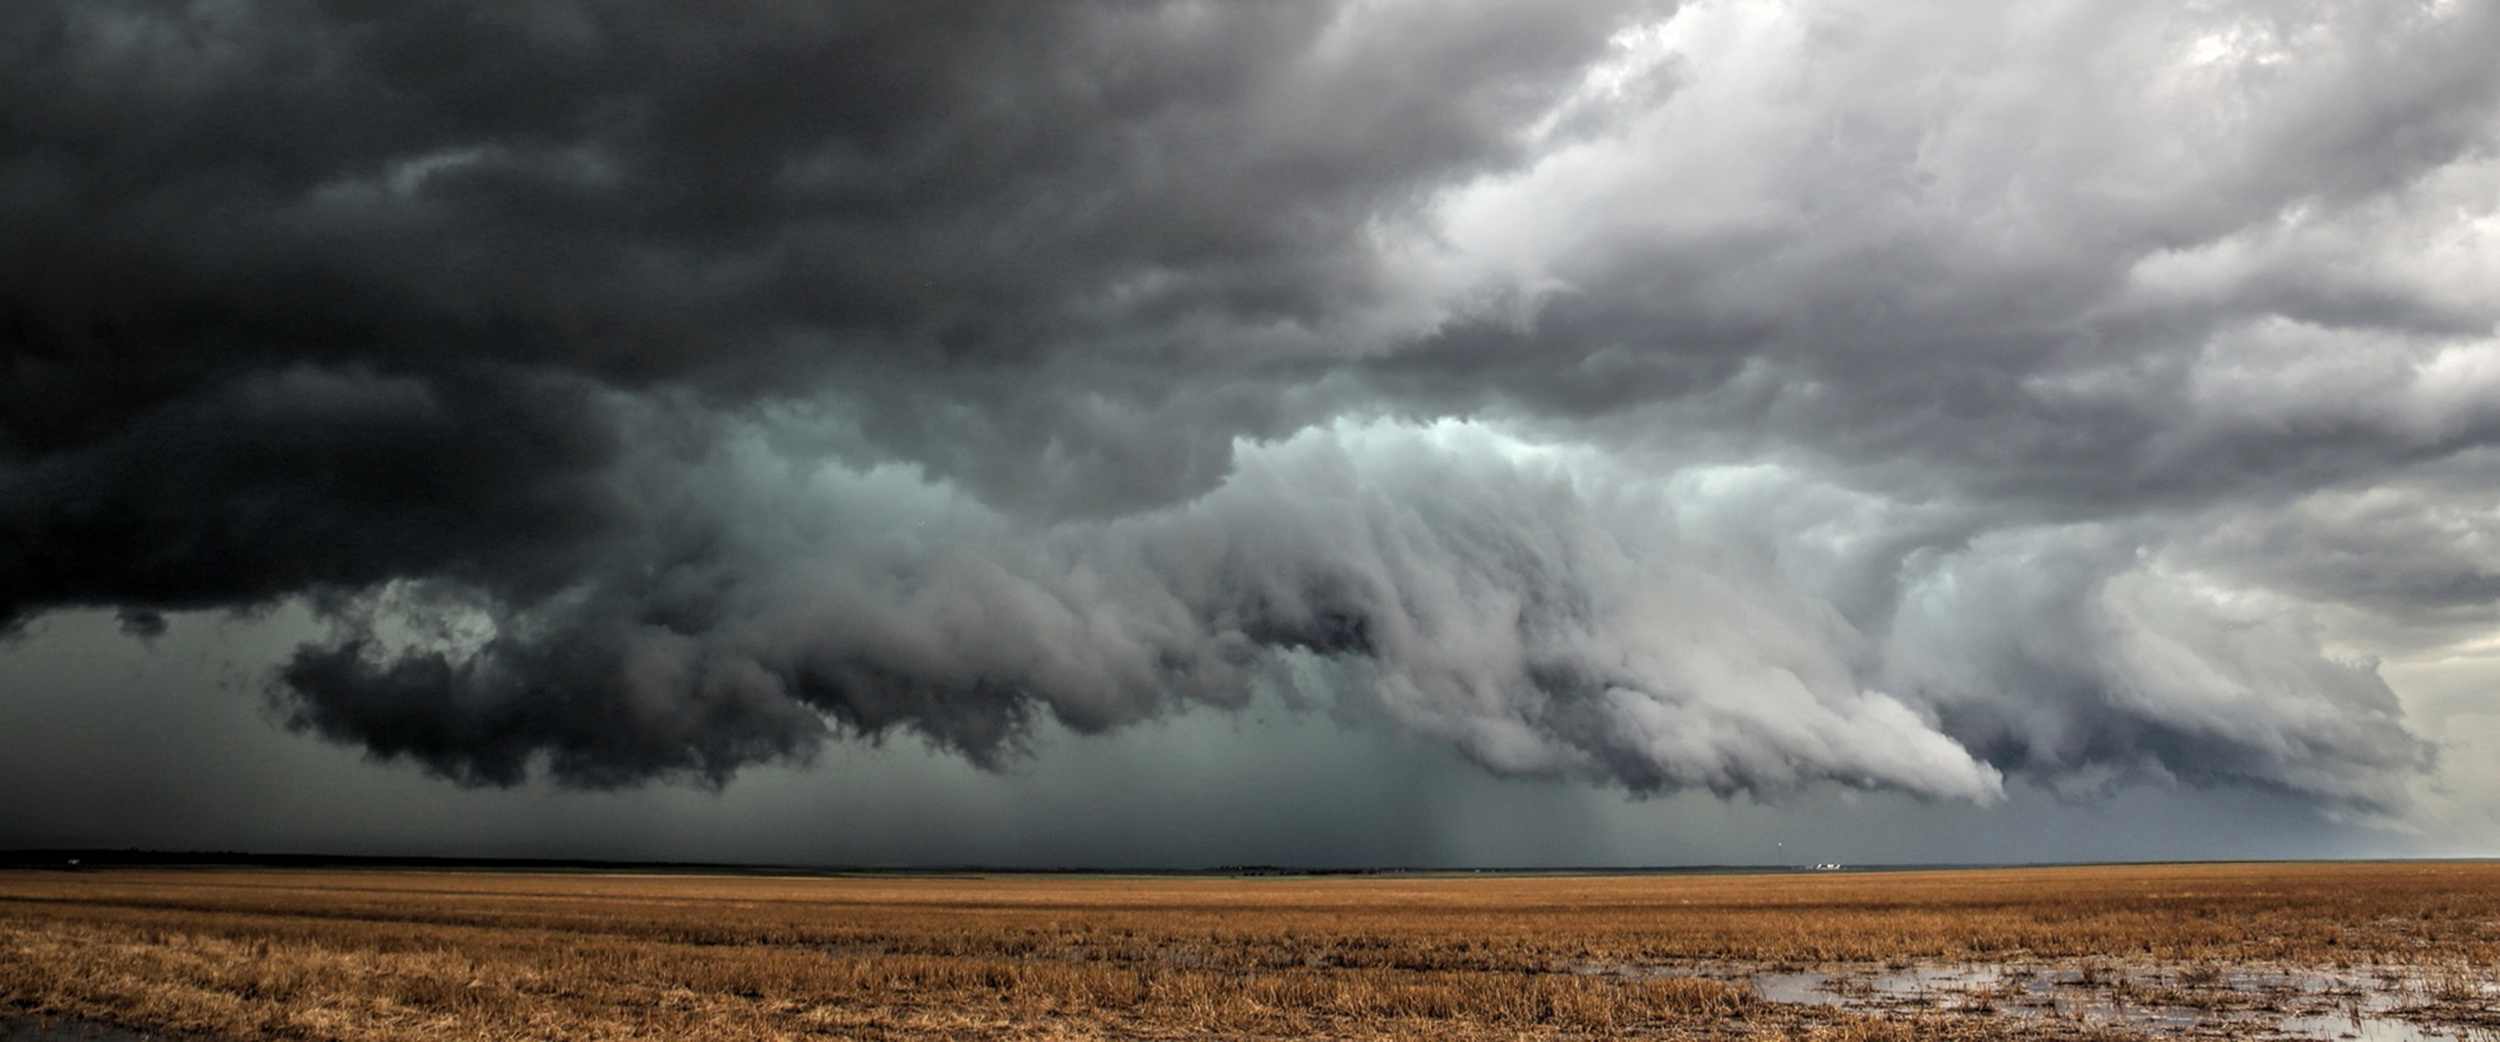 Les derechos traversent souvent de grandes étendues avec un impressionnant nuage arcus à leur arrivée. © Pat, Adobe Stock